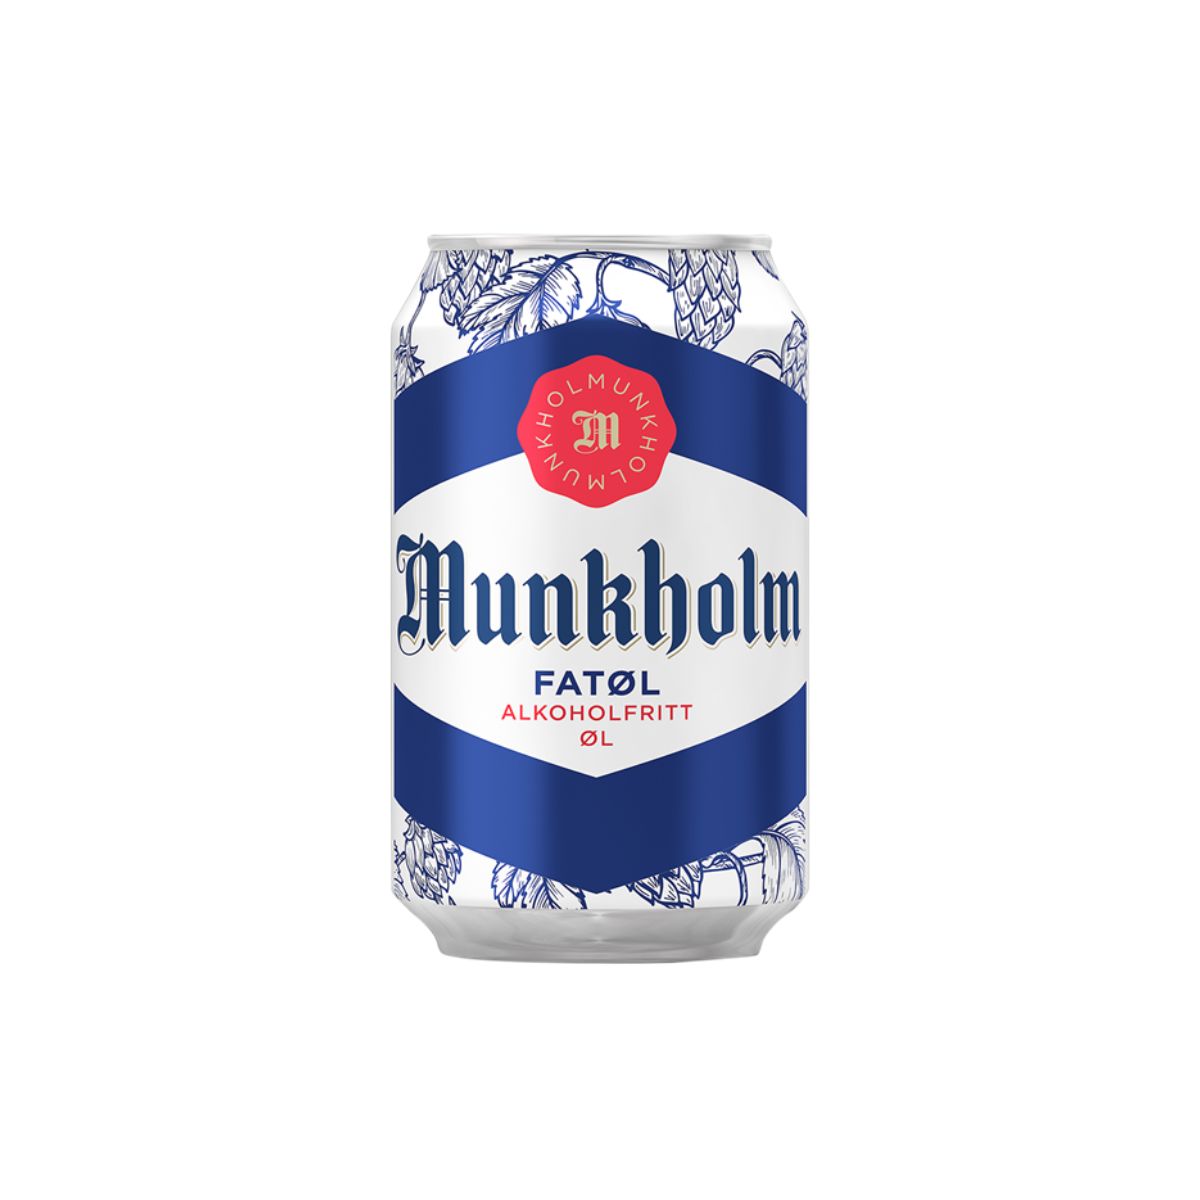 Munkholm Fatøl 0,33l bx